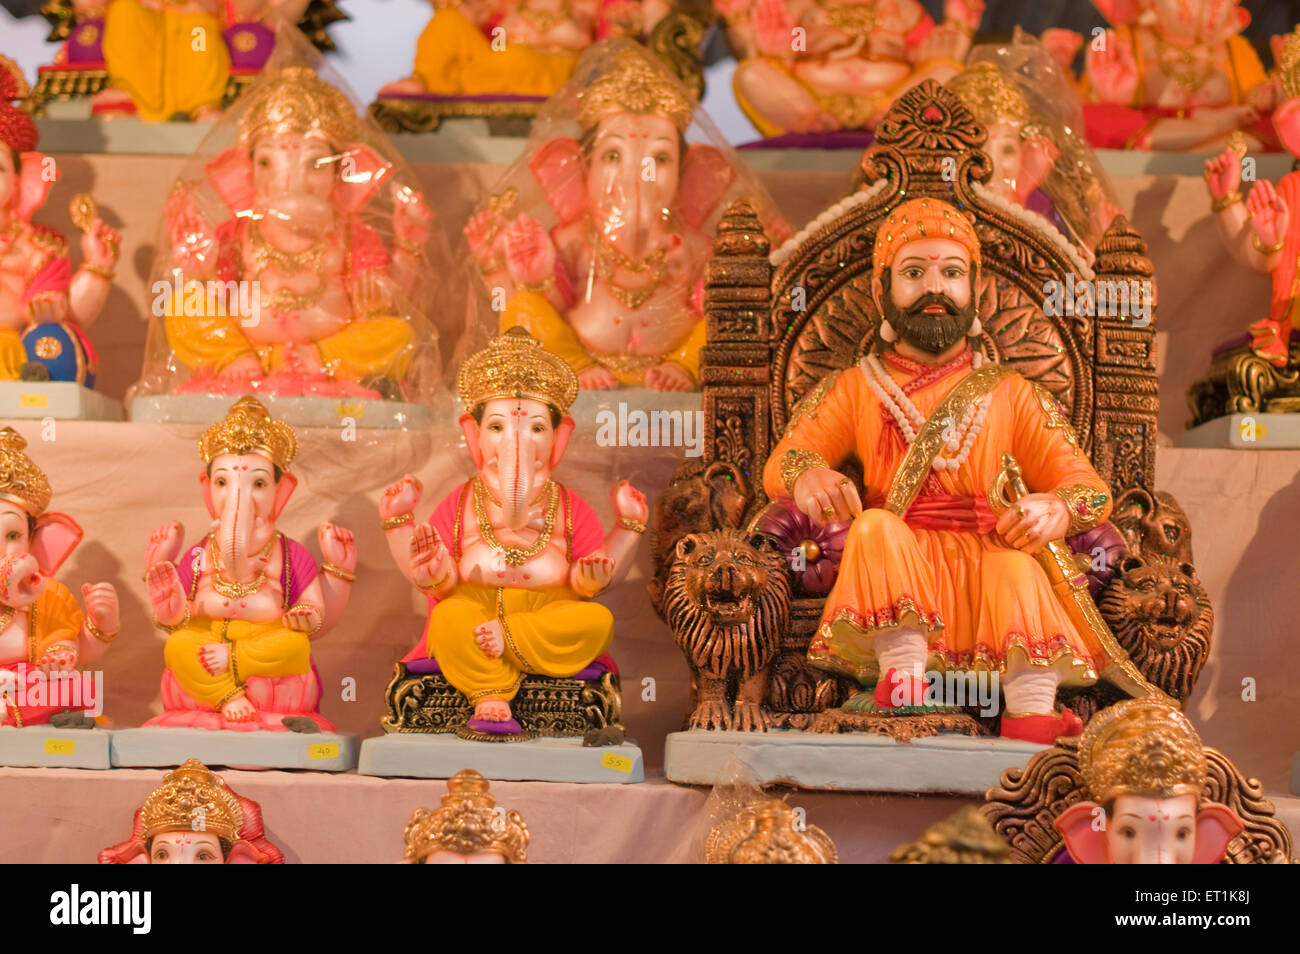 Plusieurs idoles de Seigneur Ganesh avec règle Maratha Pune Maharashtra Shivaji Inde Asie Août 2011 Banque D'Images